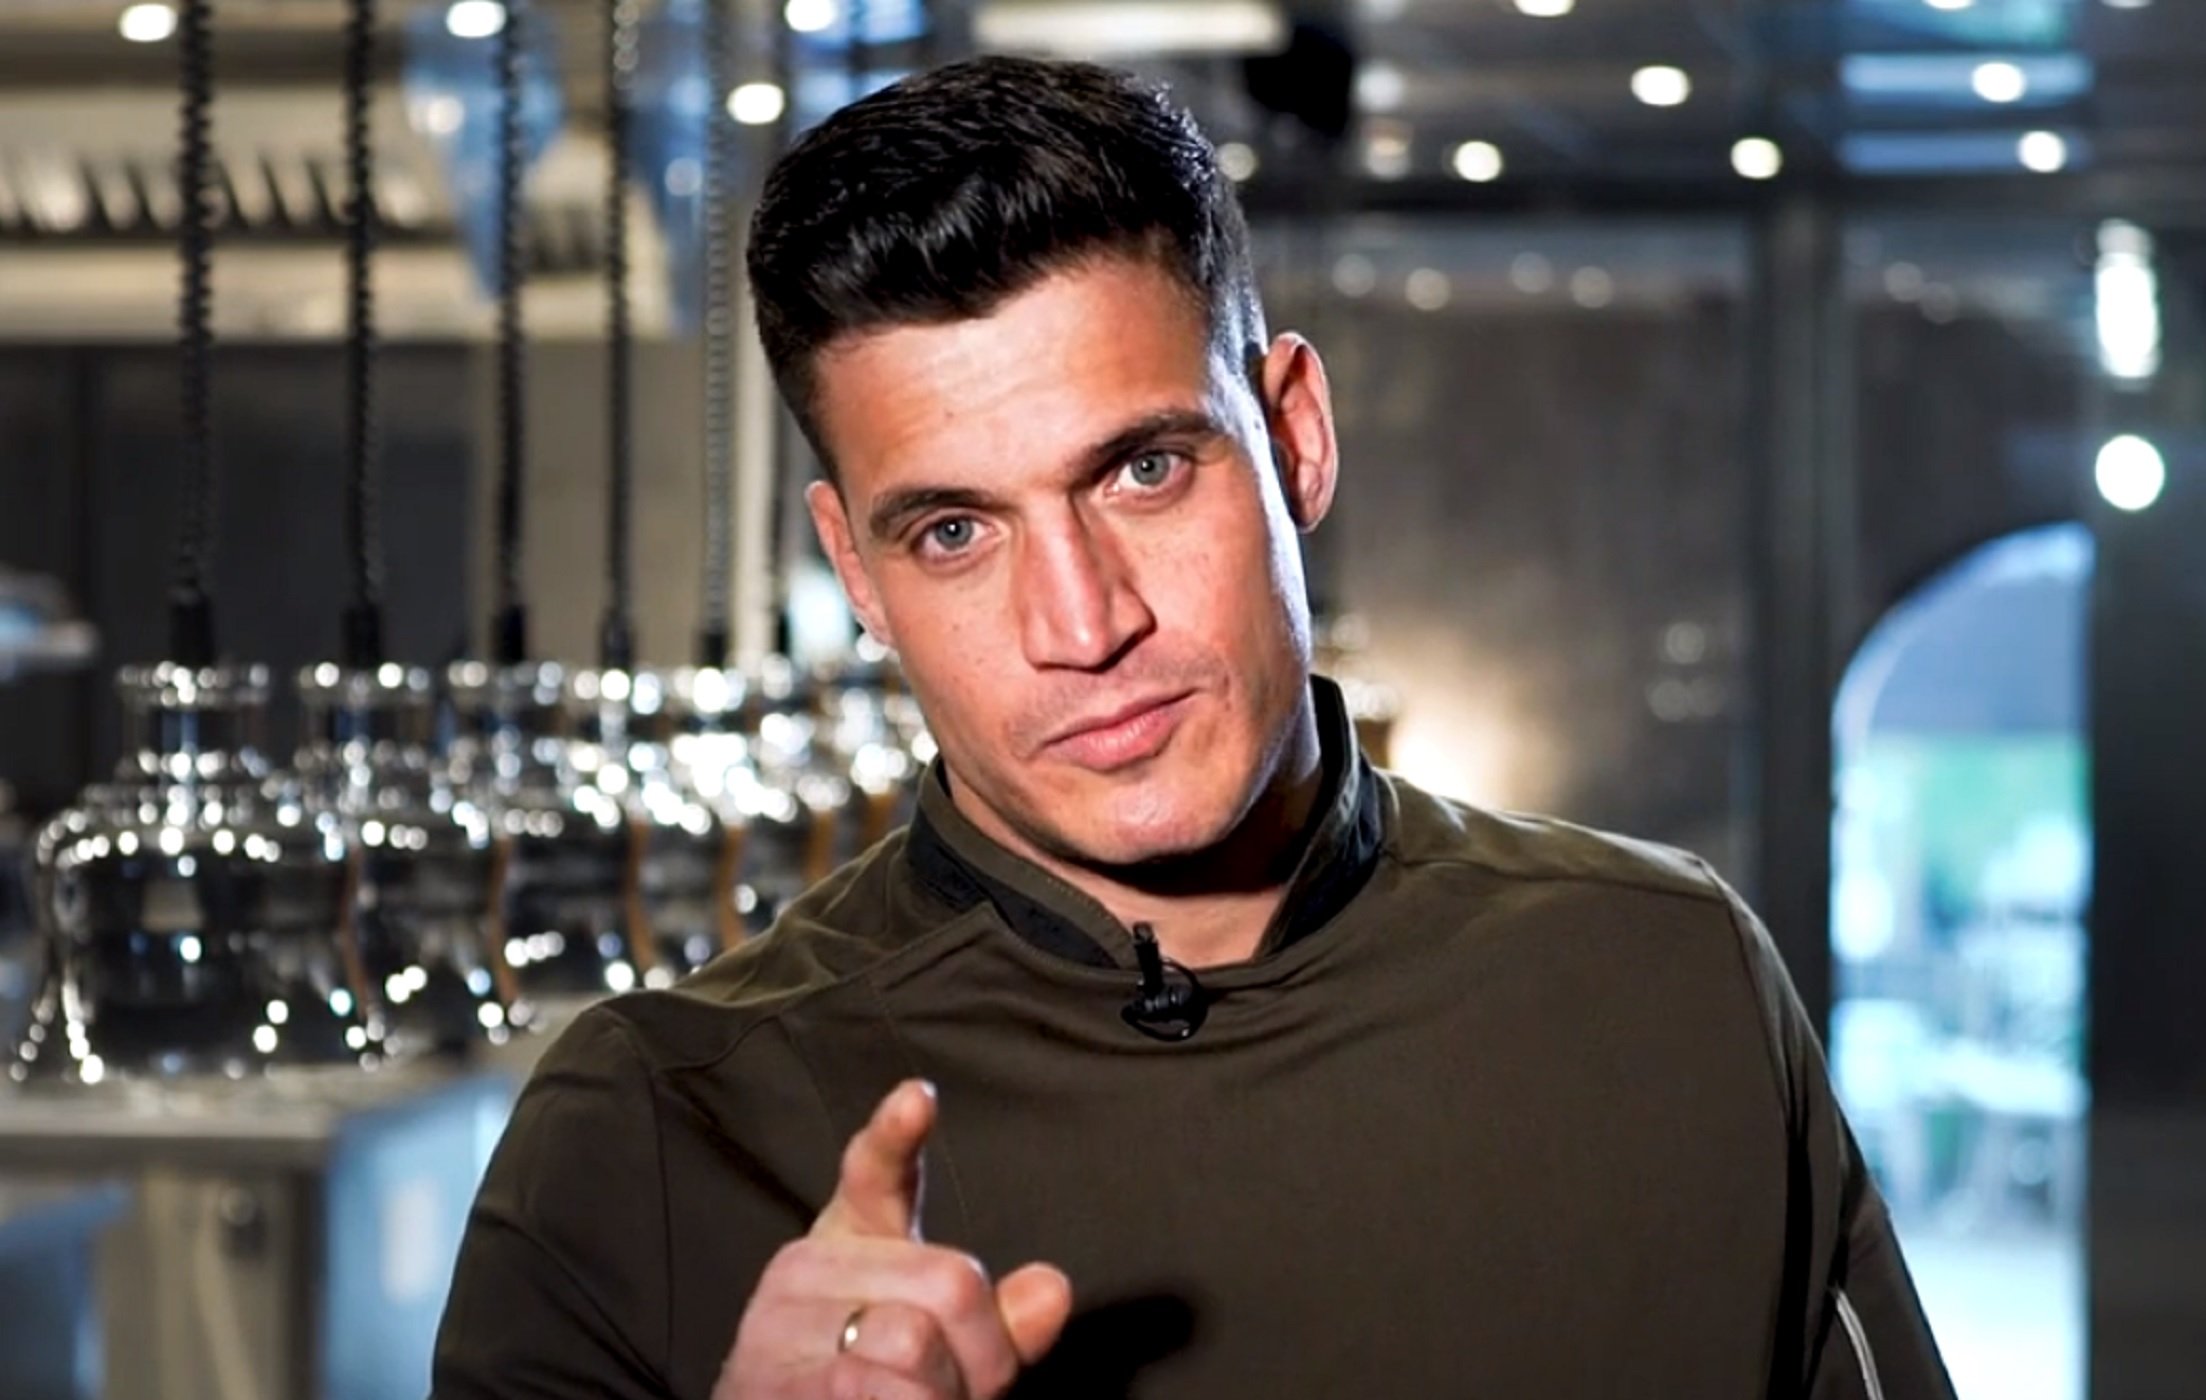 Así es el nuevo chef estrella de Telecinco: buenorro, casado y pro-monárquico